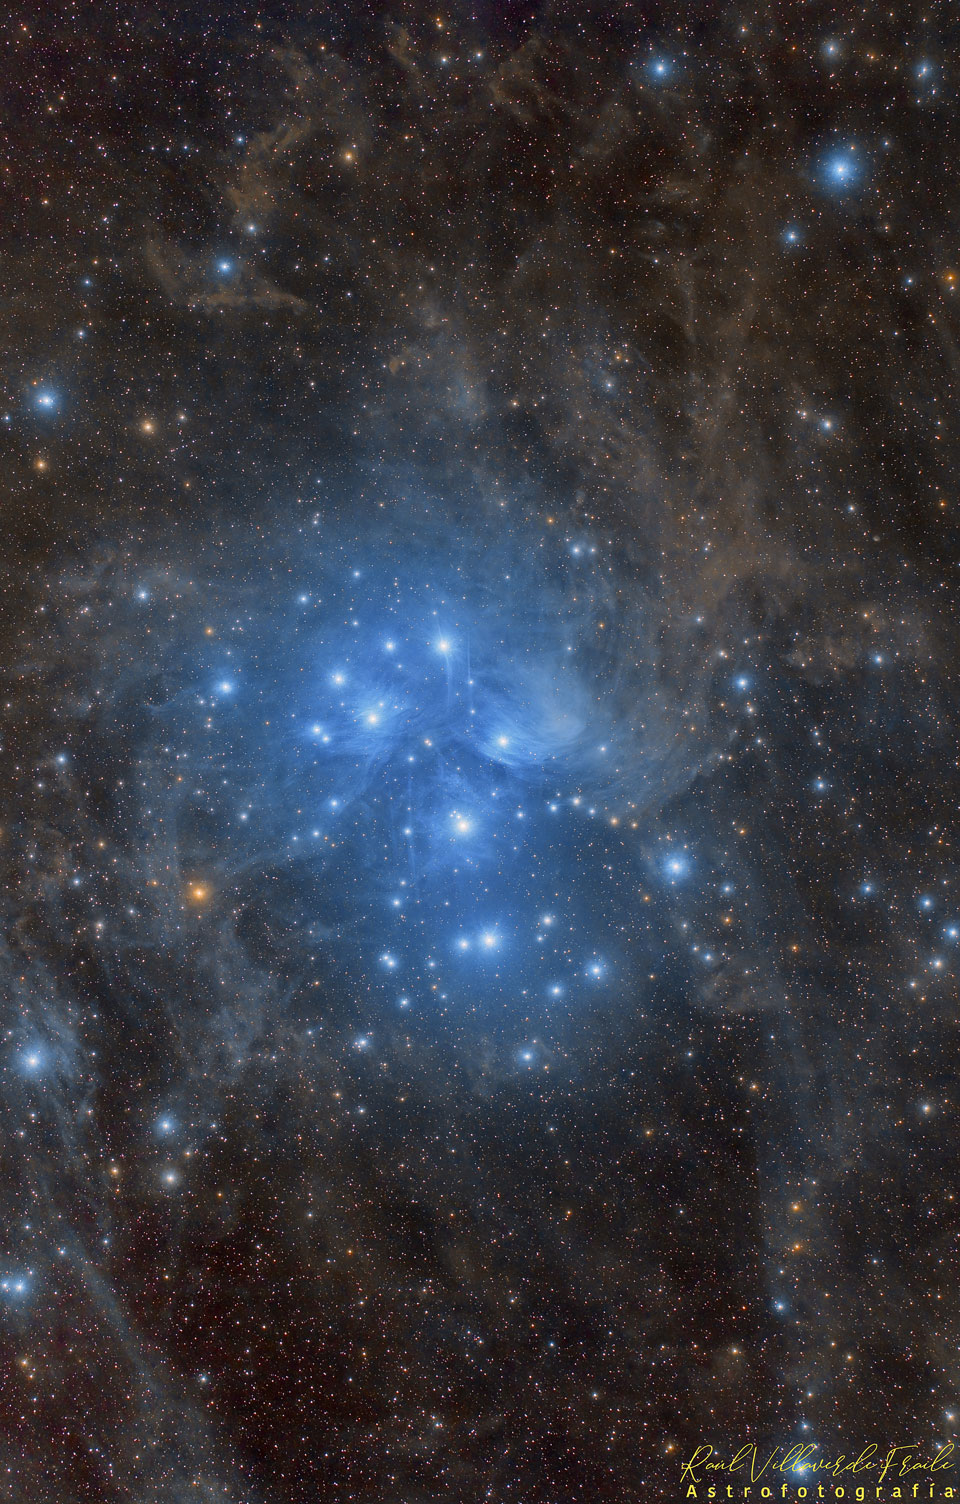 Die Plejaden sind auch als die sieben Schwestern oder M45 bekannt. Sie liegen ungefähr 400 Lichtjahre entfernt im Sternbild Stier (Taurus).